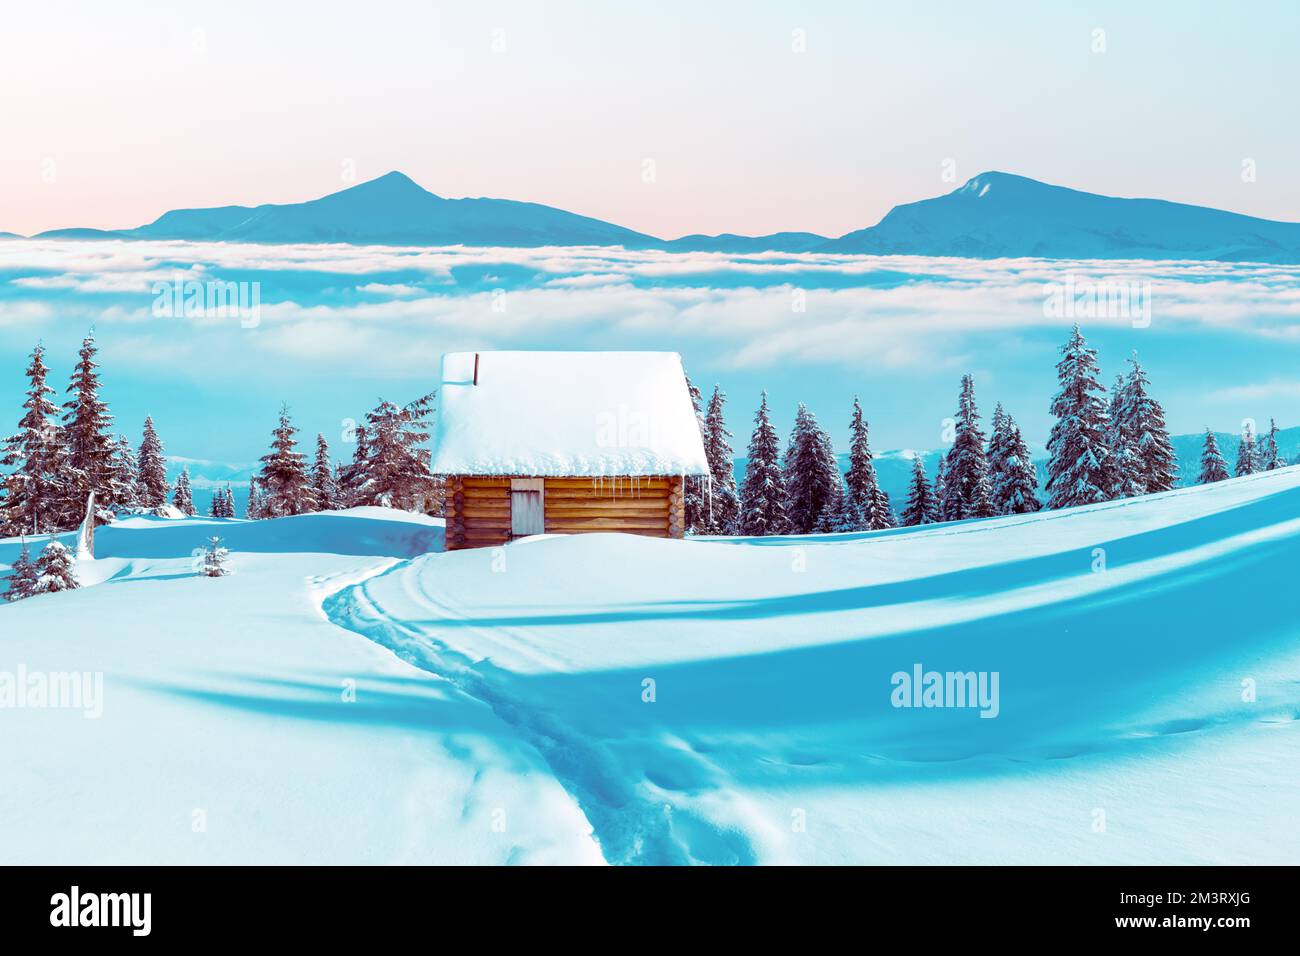 Paysage d'hiver fantastique avec maison en bois et pics de montagne dans la brume dans les montagnes enneigées. Concept de vacances de Noël. Montagne des Carpates, Ukraine, Europe Banque D'Images